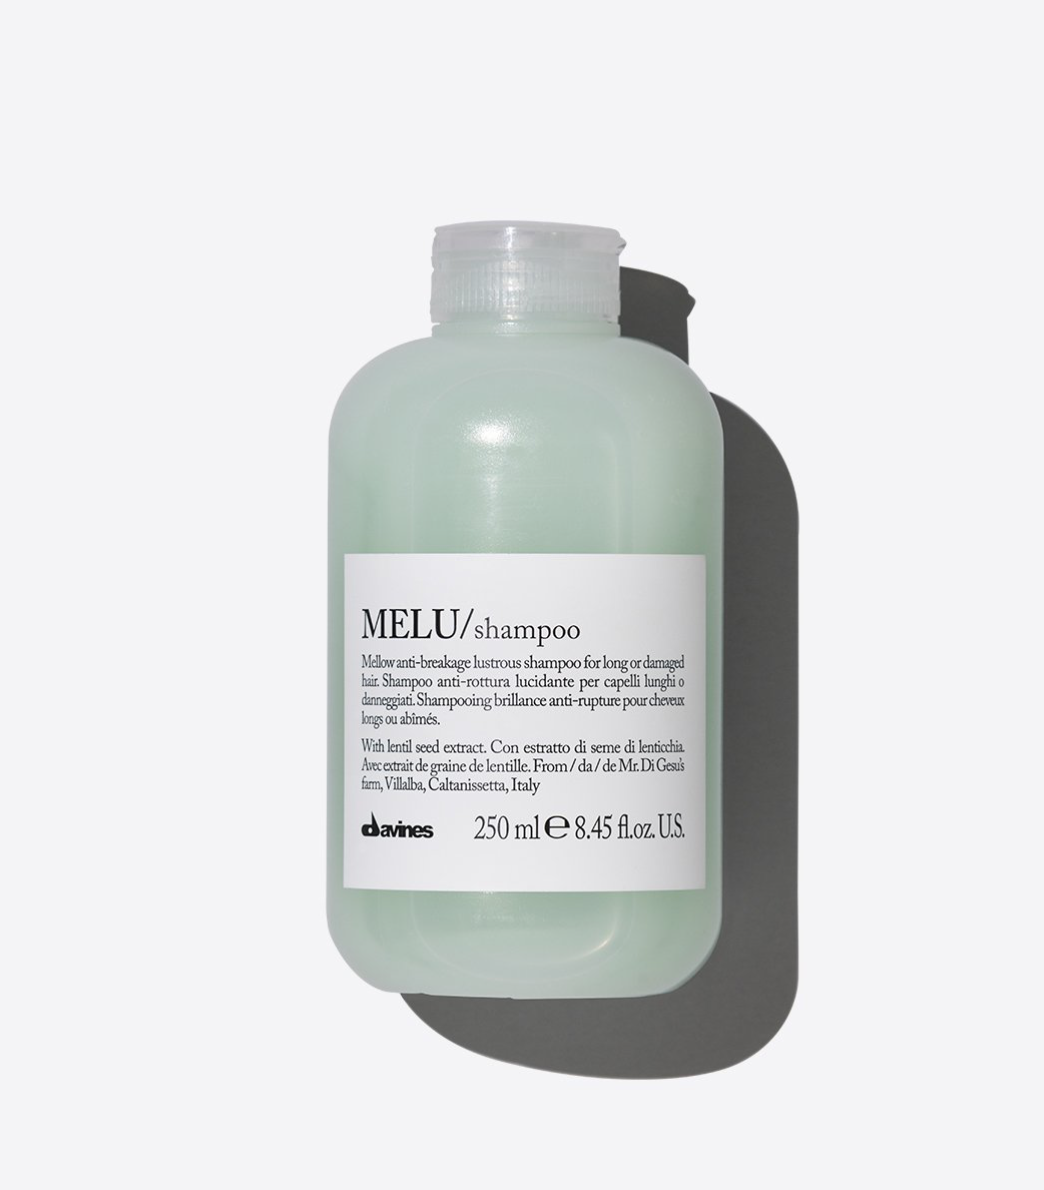 MELU/ shampoo - 250ml £17.50